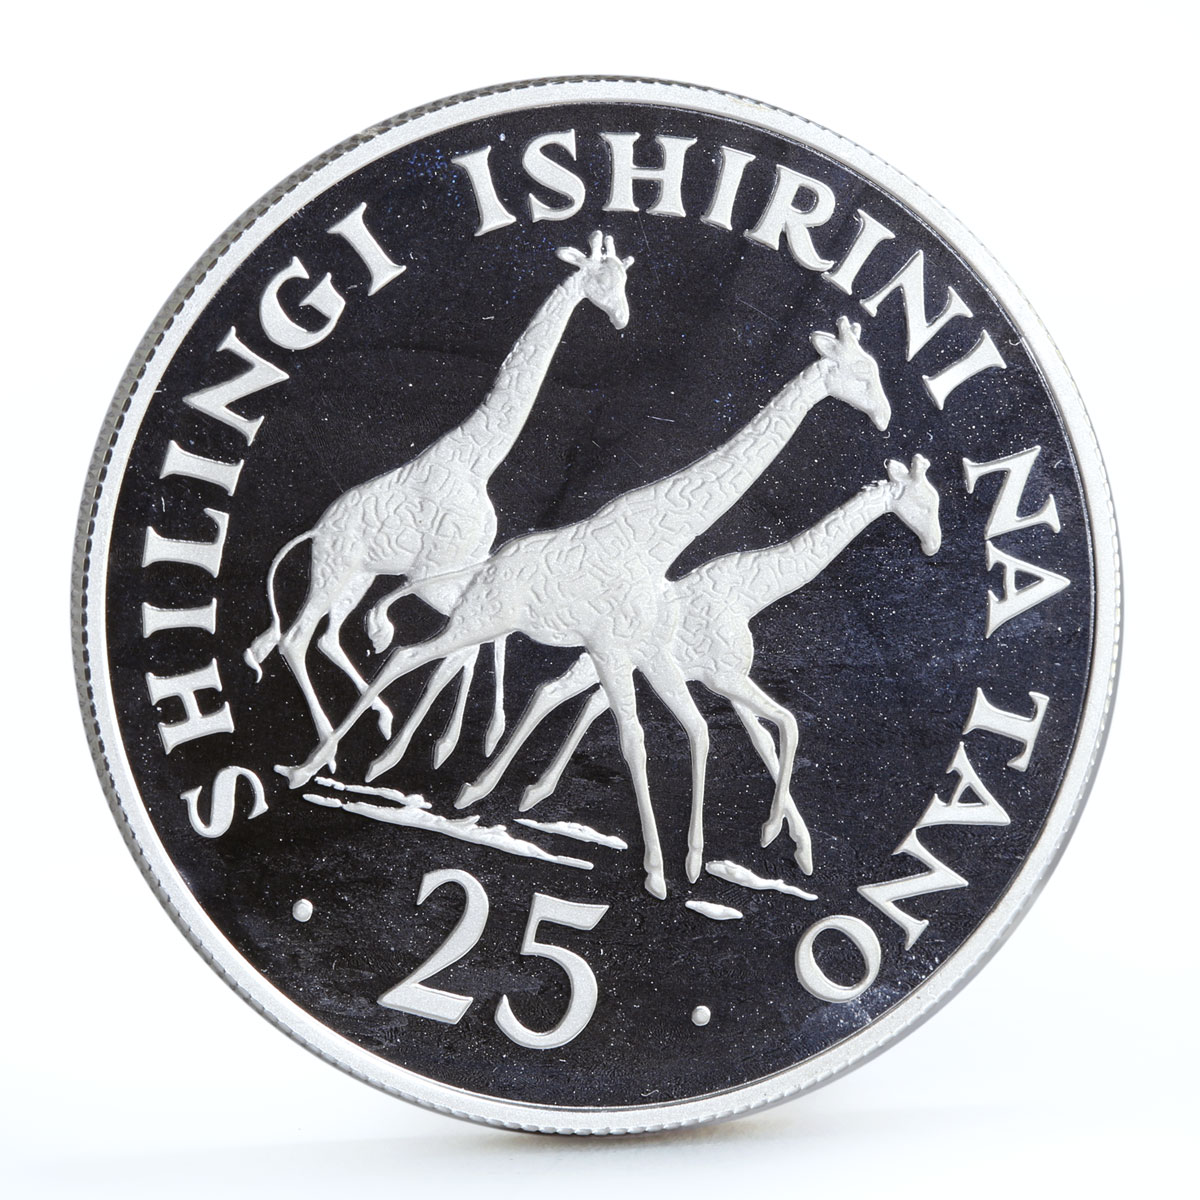 Tanzania 25 shillings Wildlife Conservation Giraffes Fauna silver coin 1974